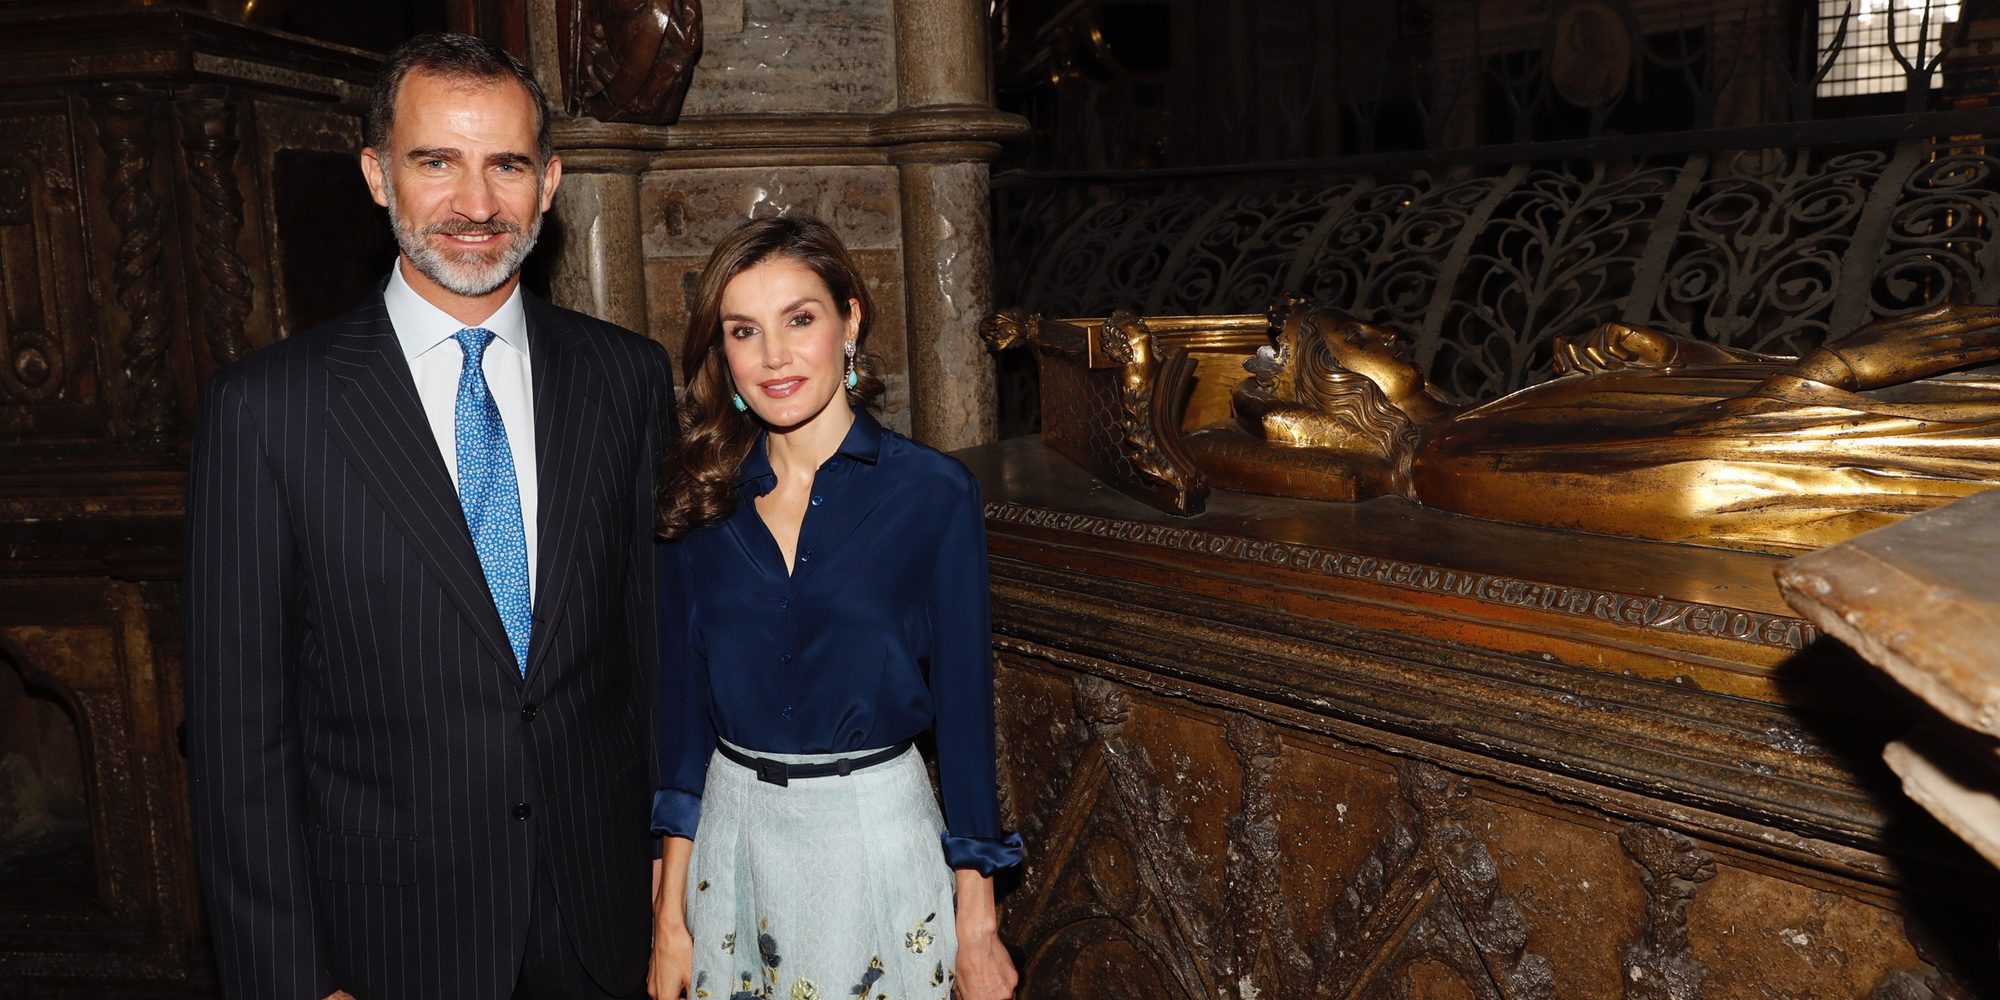 Los Reyes Felipe y Letizia 'recuerdan' a la Princesa Leonor en su visita a la Abadía de Westminster con el Príncipe Harry